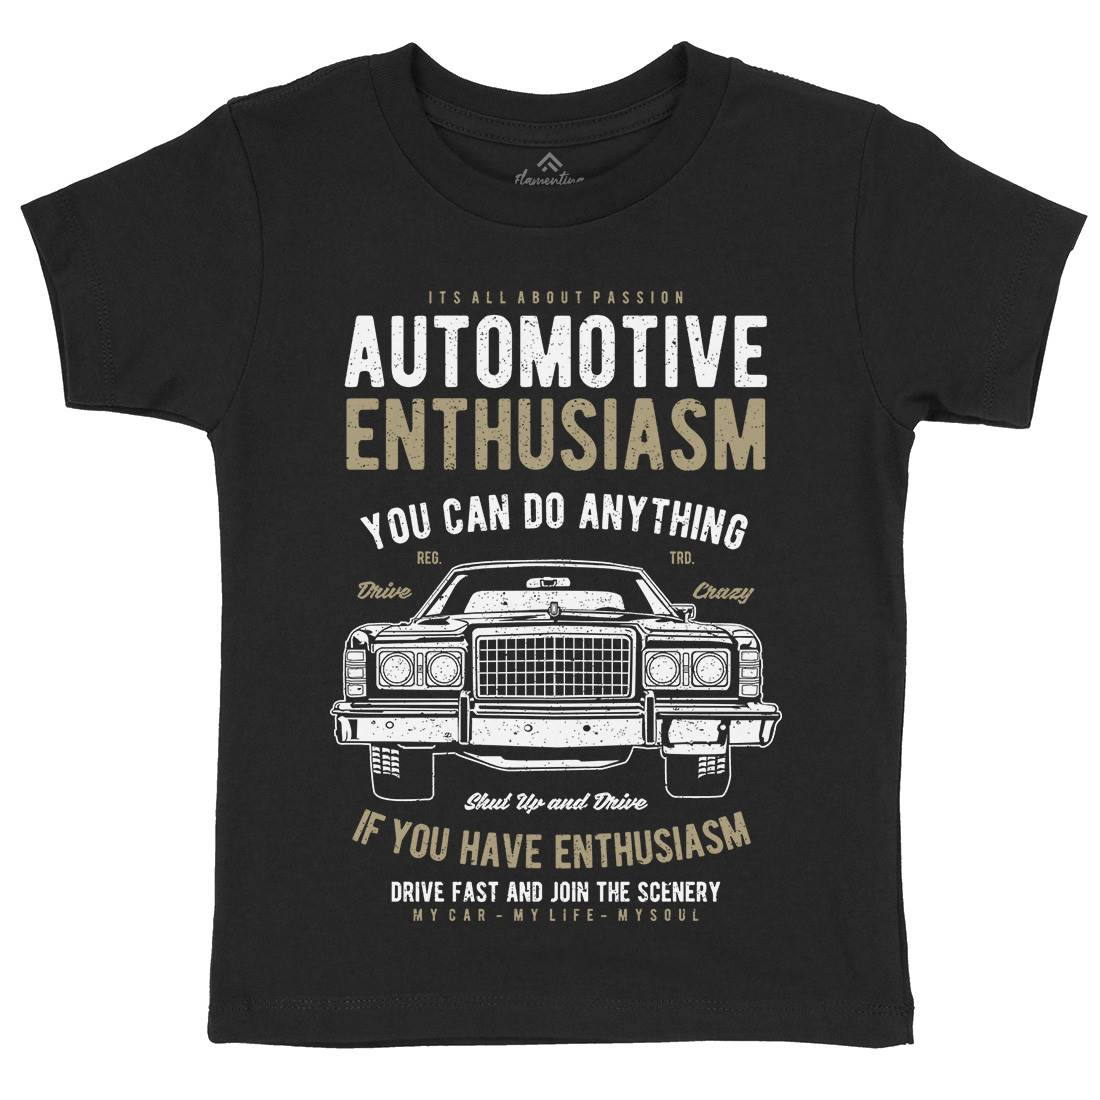 Automotive Enthusiasm Kids Crew Neck T-Shirt Cars A614